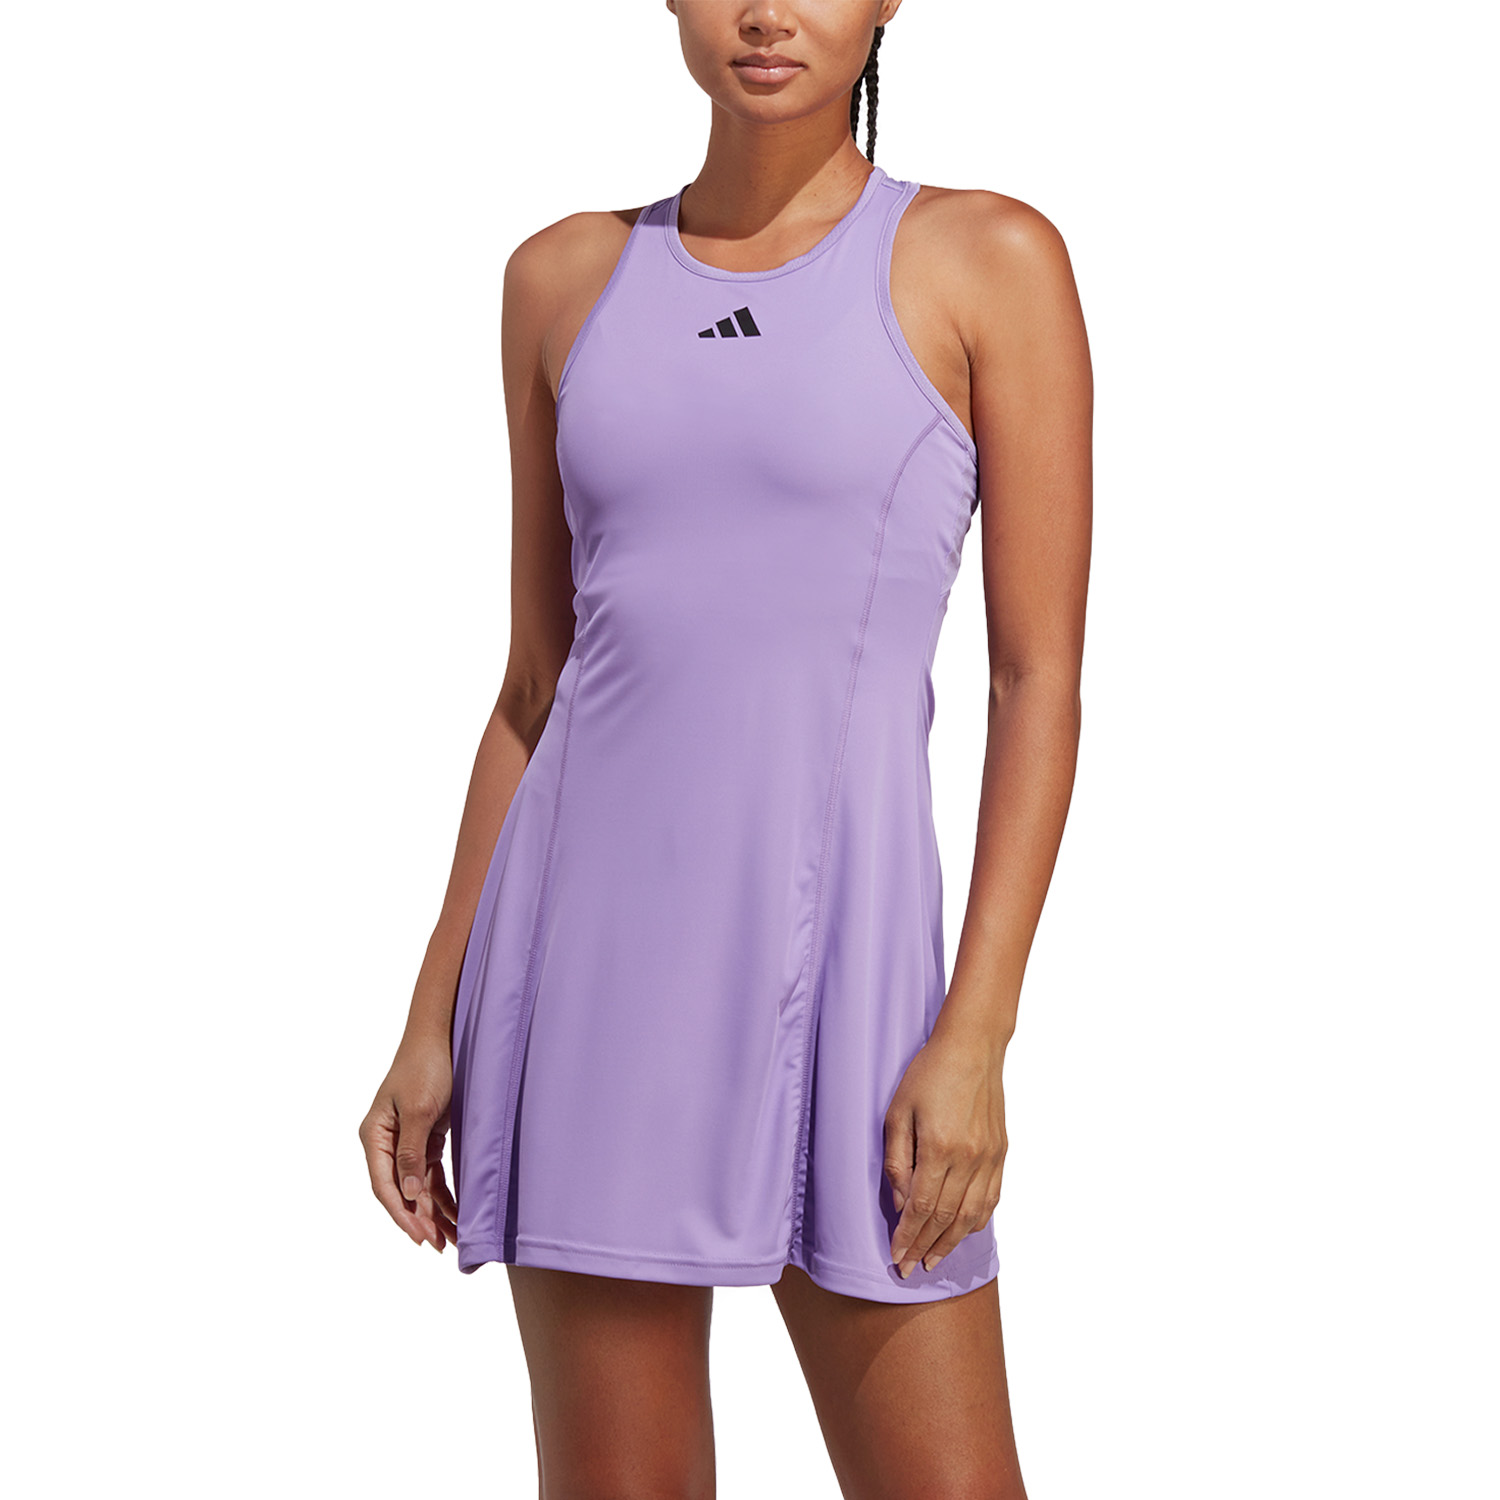 Club Vestido de Tenis - Violet Fusion